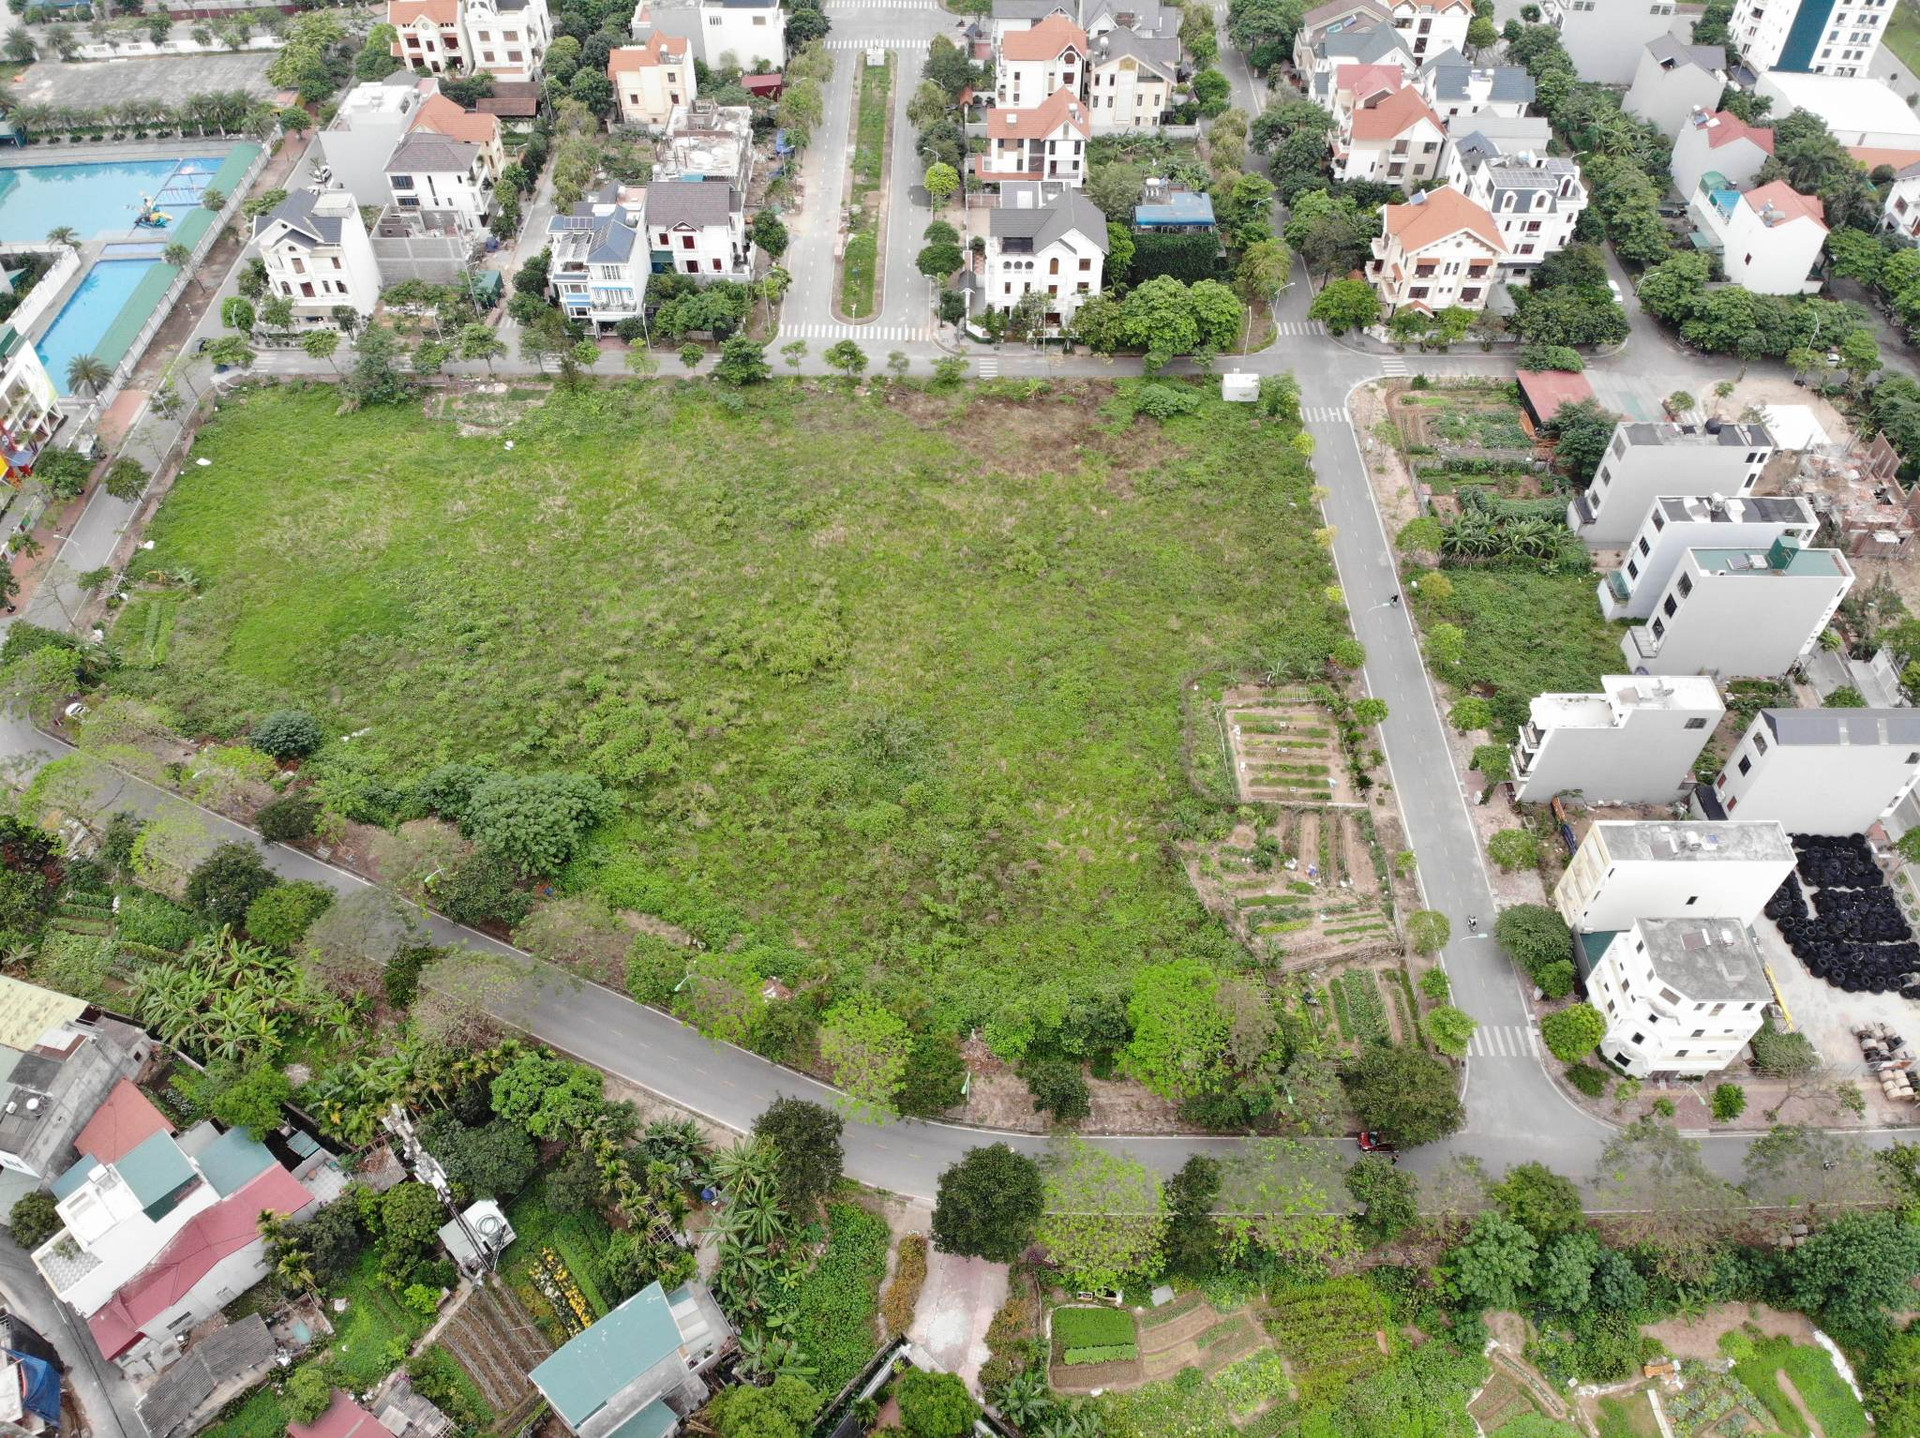 Hơn chục năm qua, diện tích đất dành cho giáo dục tại khu đô thị cao cấp Đỉnh Long vẫn bị bỏ hoang (ảnh chụp từ trên cao).